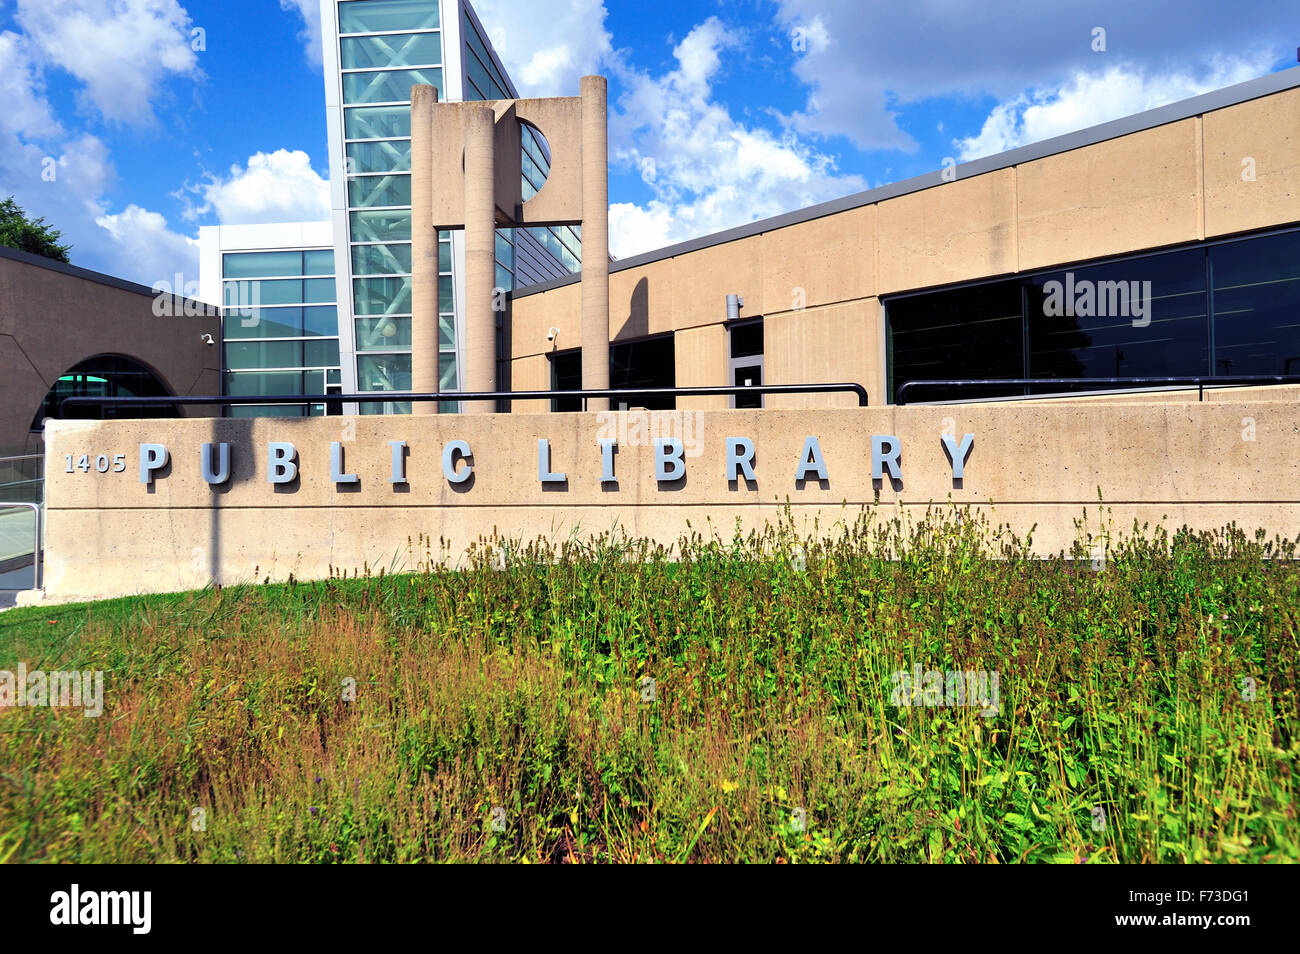 Las bibliotecas públicas de un alimento básico para la mayoría de las comunidades de la zona urbana. Esta versión moderna descansa en el suburbio de Chicago de Streamwood, Illinois, EE.UU. Foto de stock